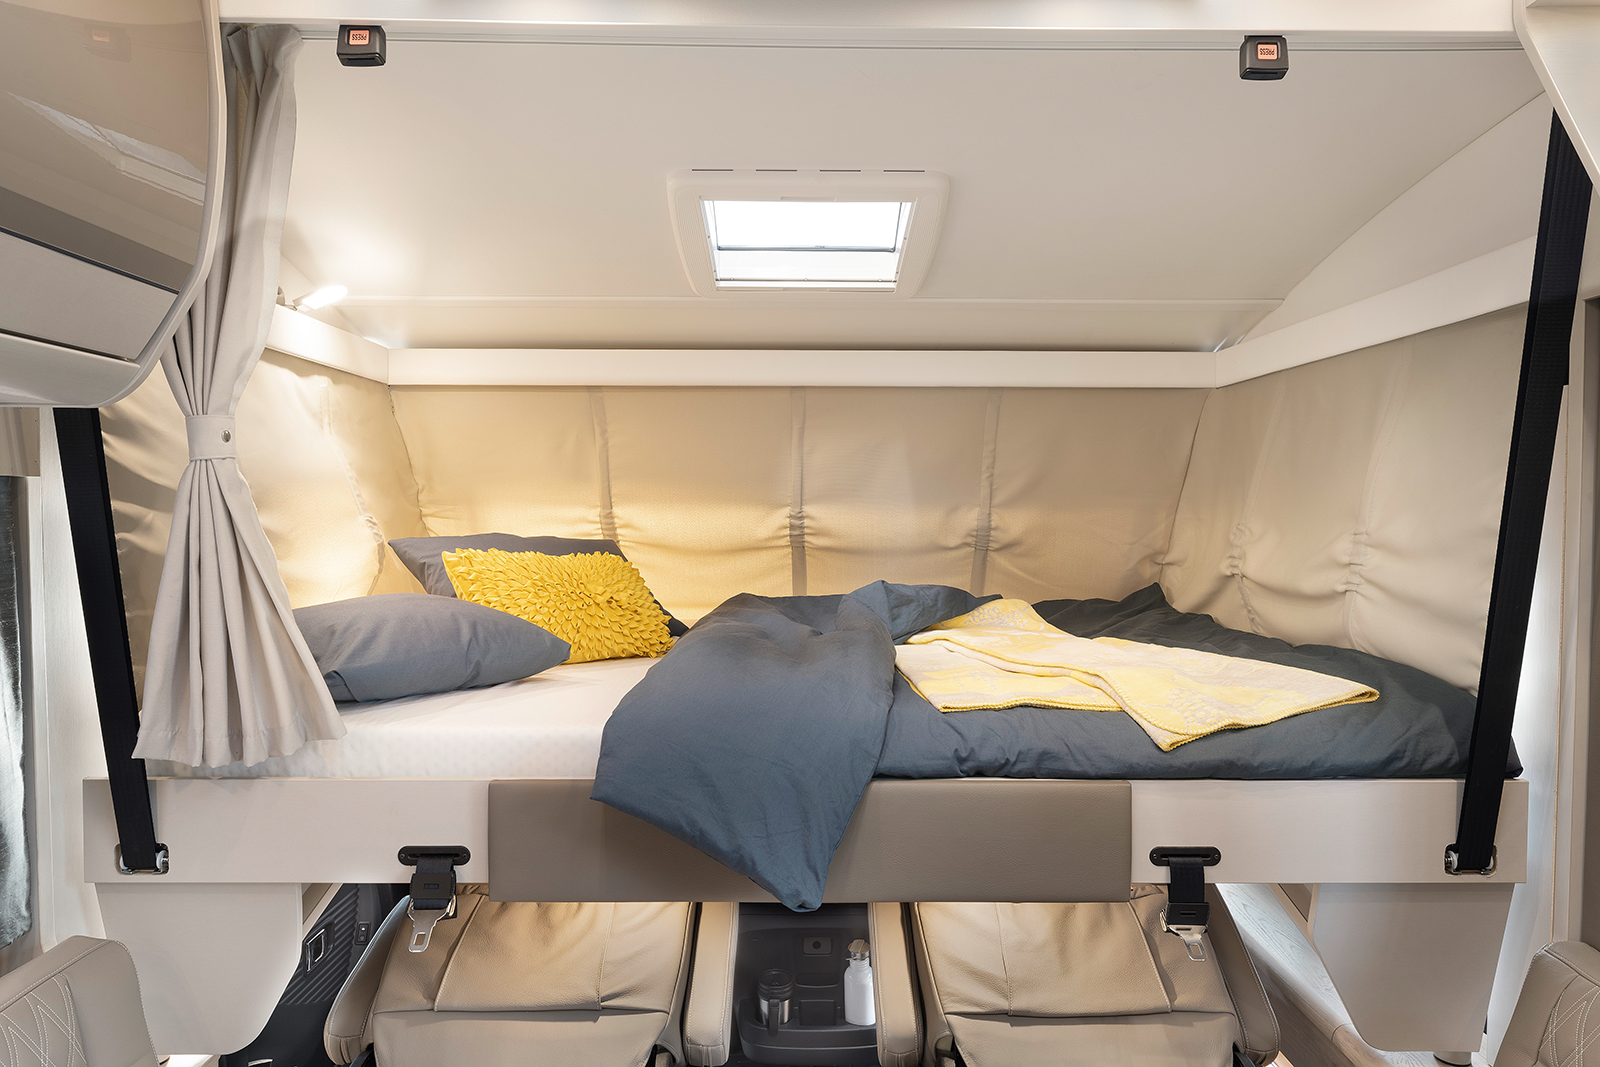 Dans le lit de pavillon de l’intégral, confort de sommeil garanti sur une surface de couchage de 200 x 150 cm – fonctionnement électrique de série